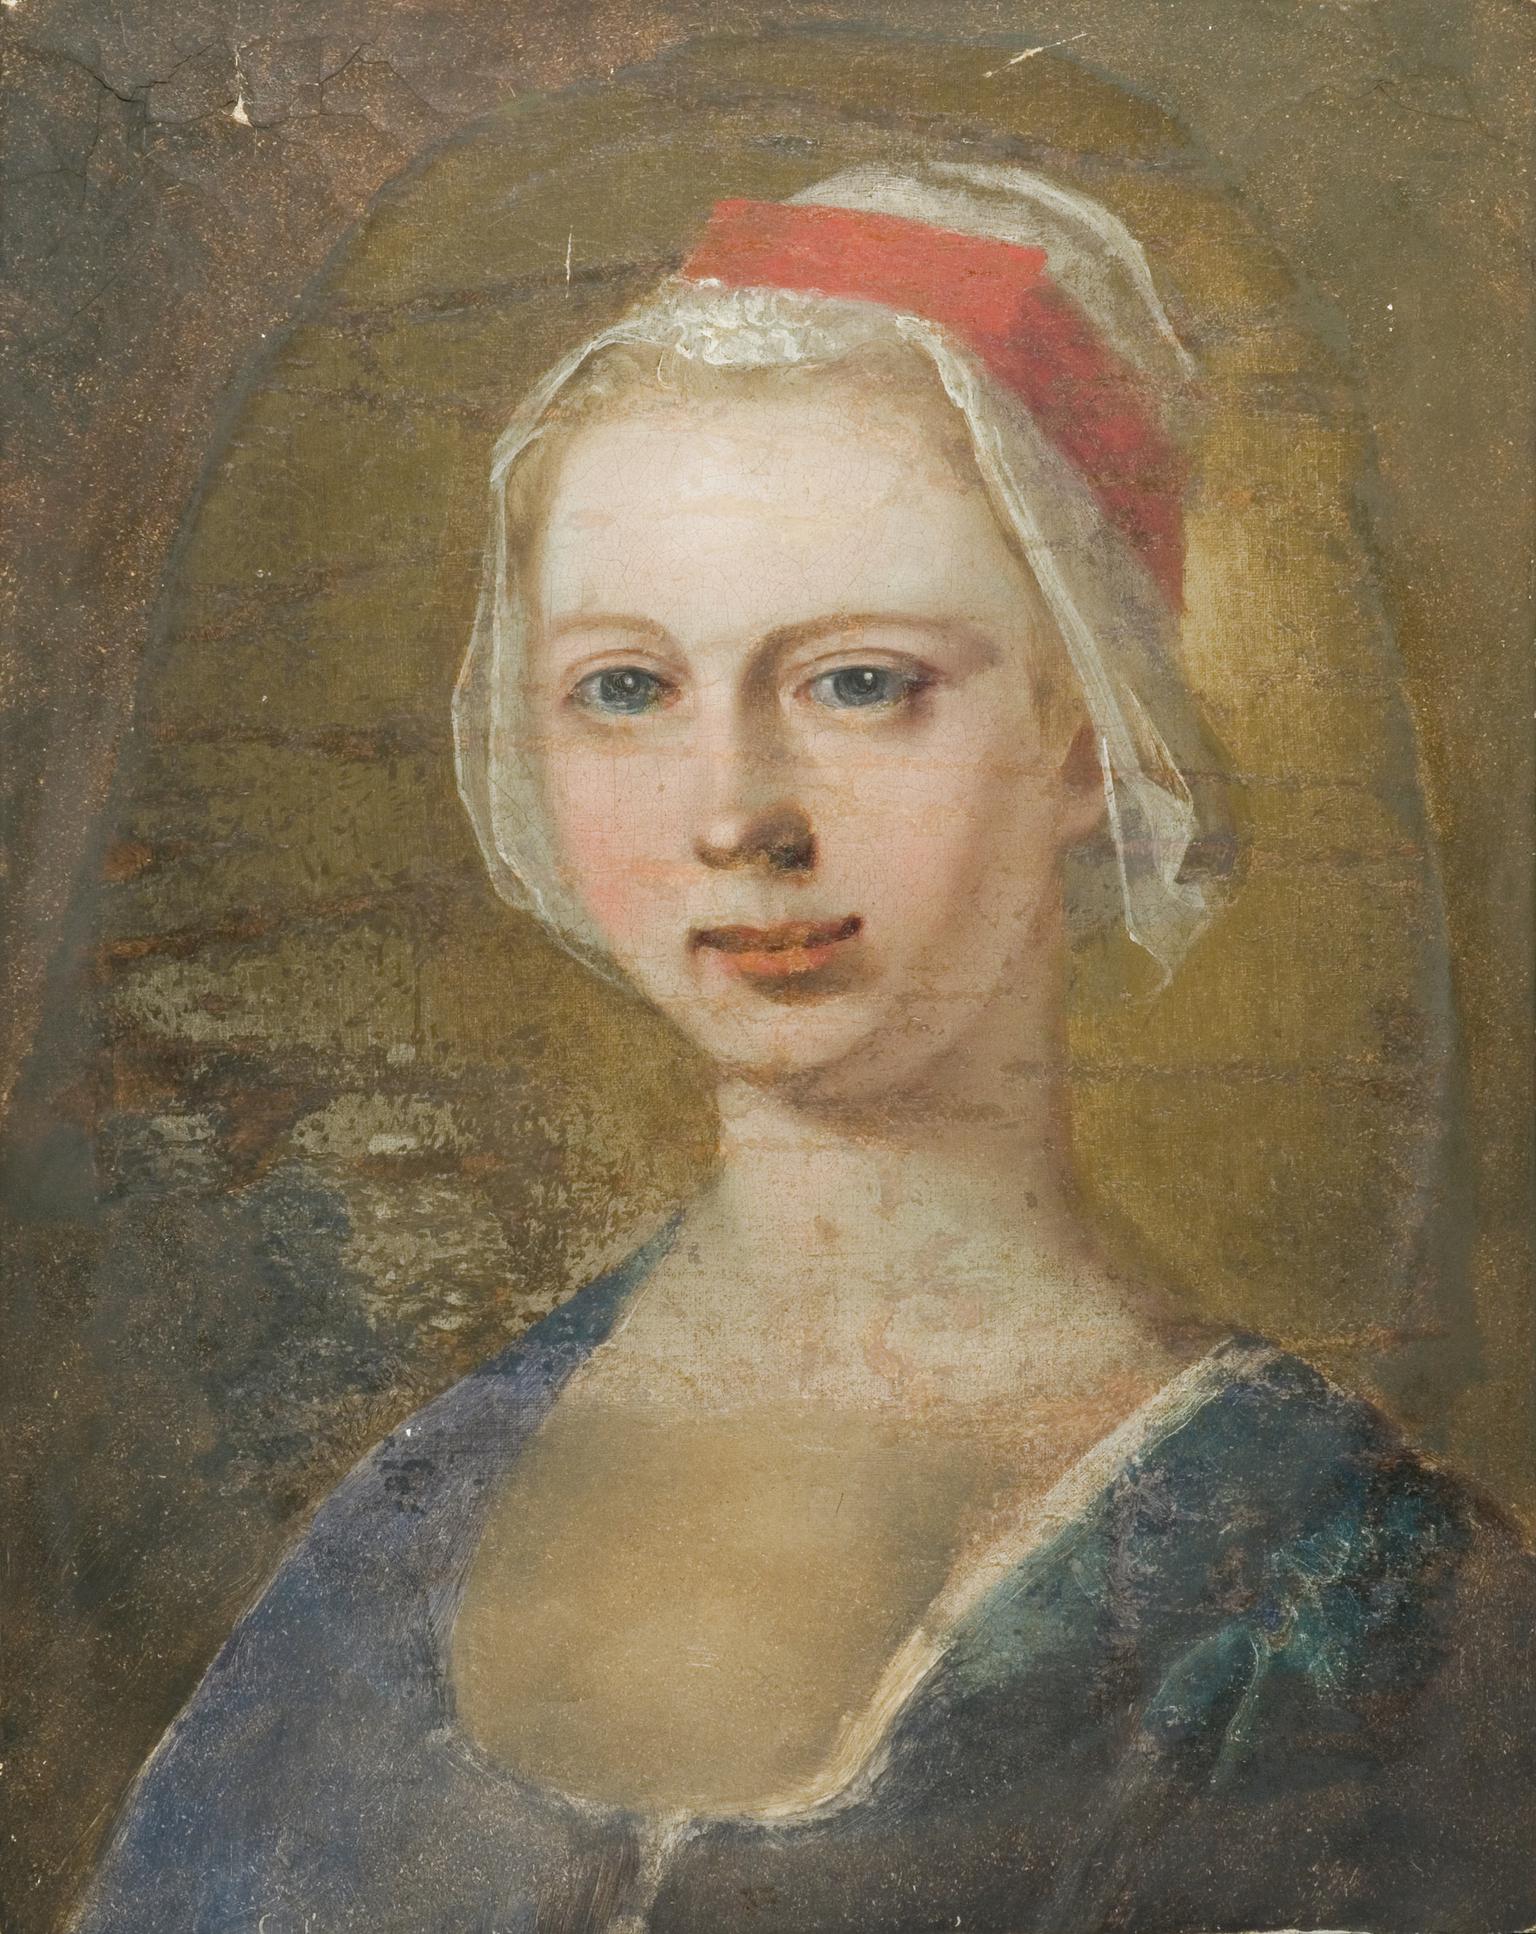 Ann Maddocks "The Maid of Cefn Ydfa" (1704-1727)